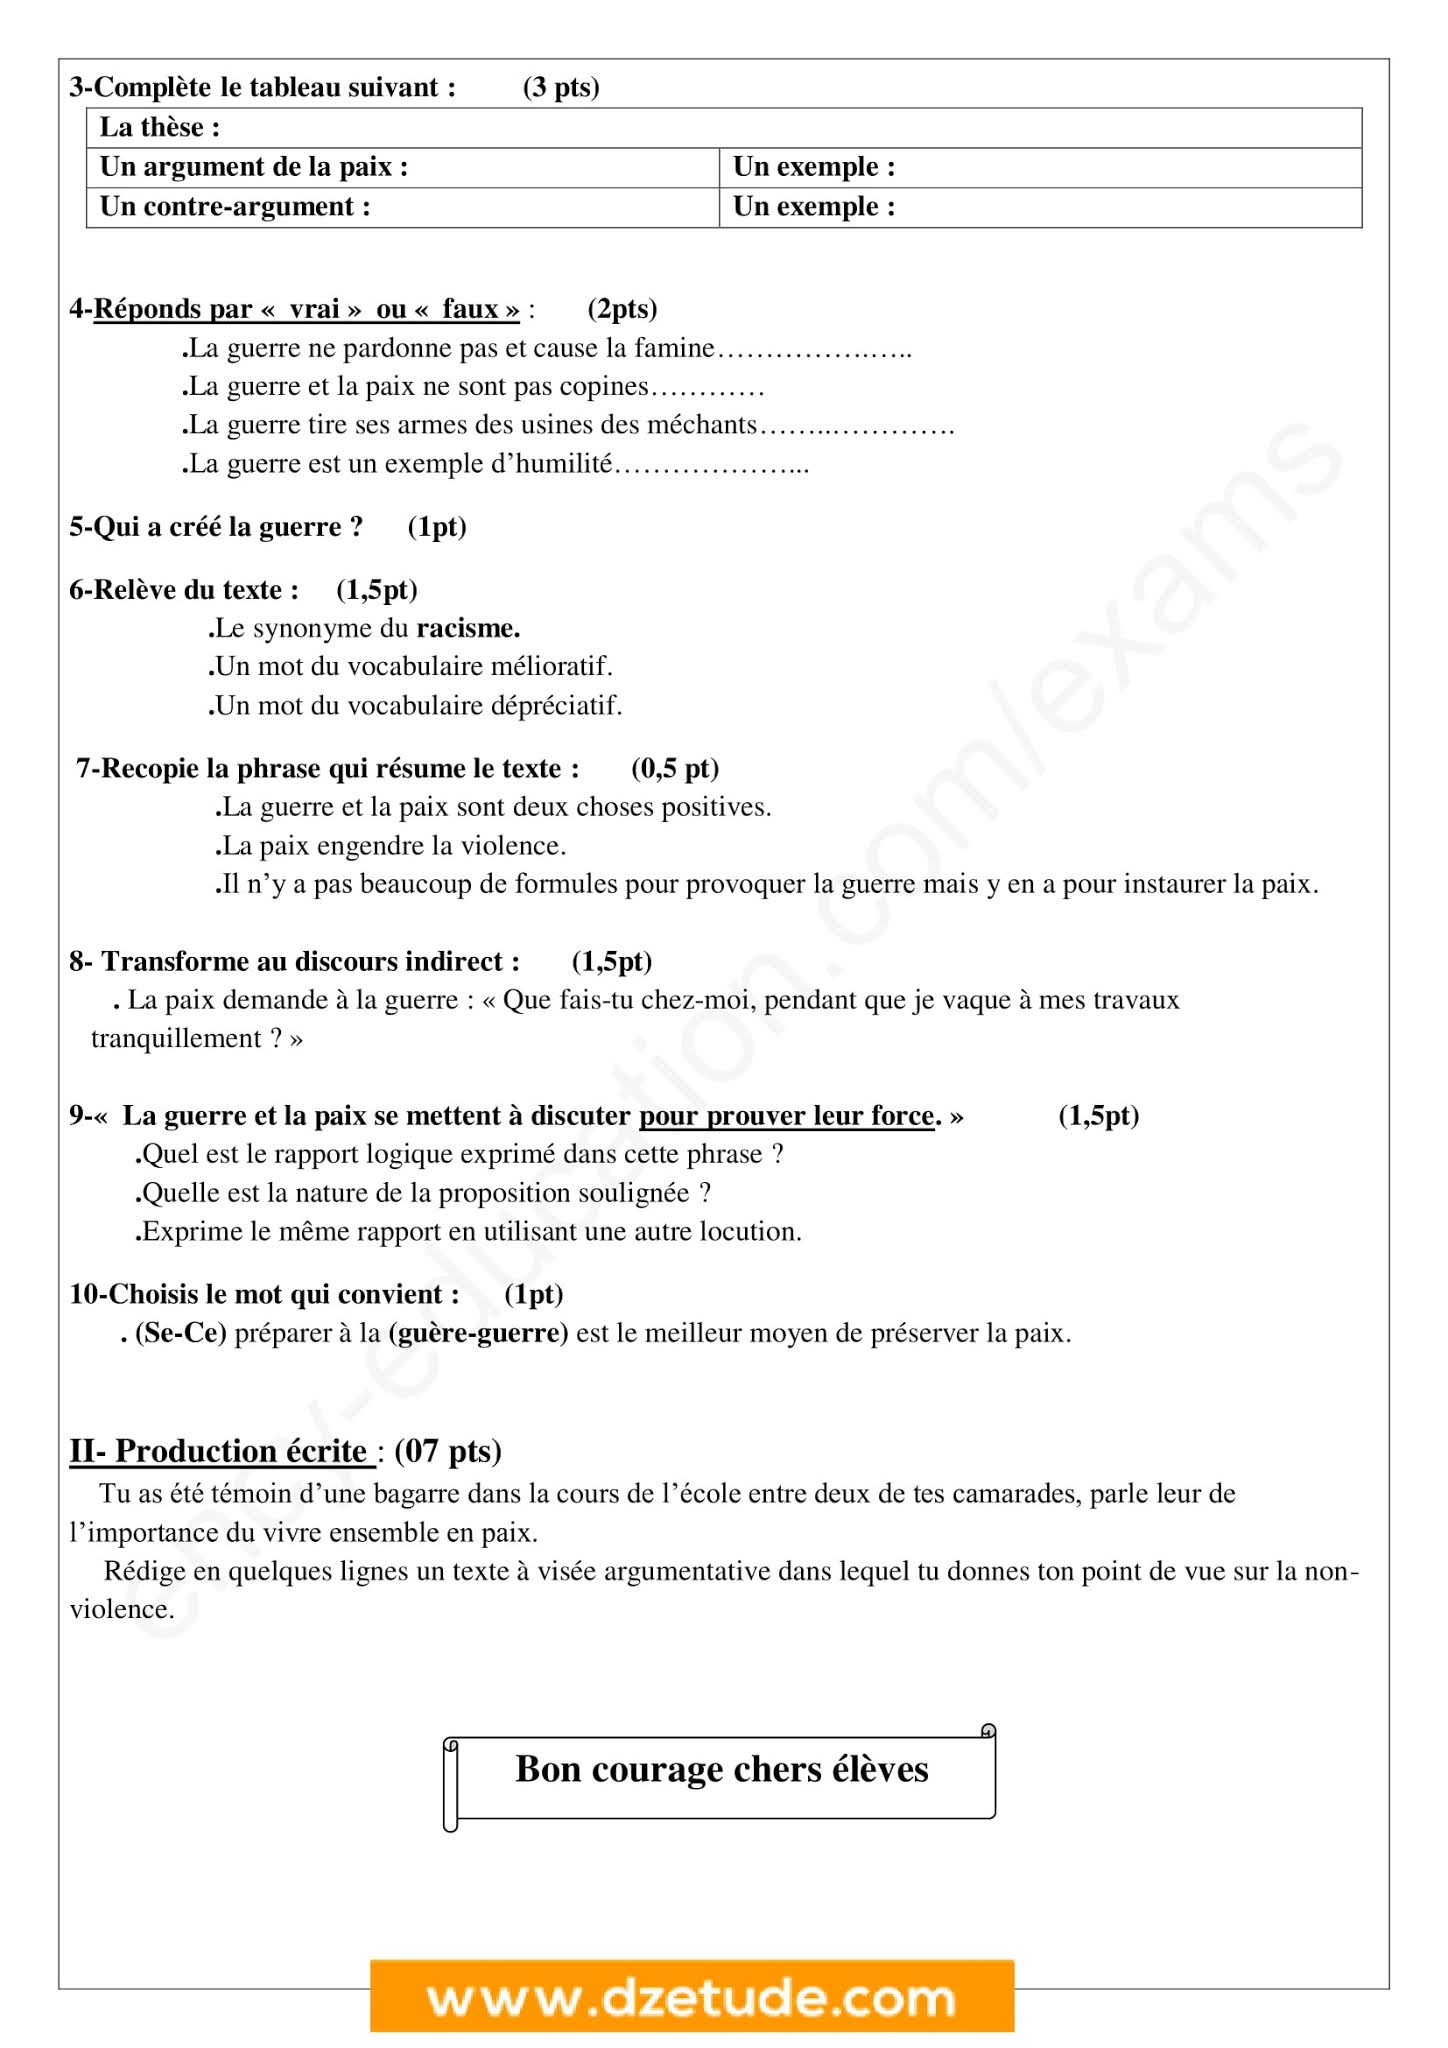 إختبار اللغة الفرنسية الفصل الثاني للسنة الرابعة متوسط - الجيل الثاني نموذج 1